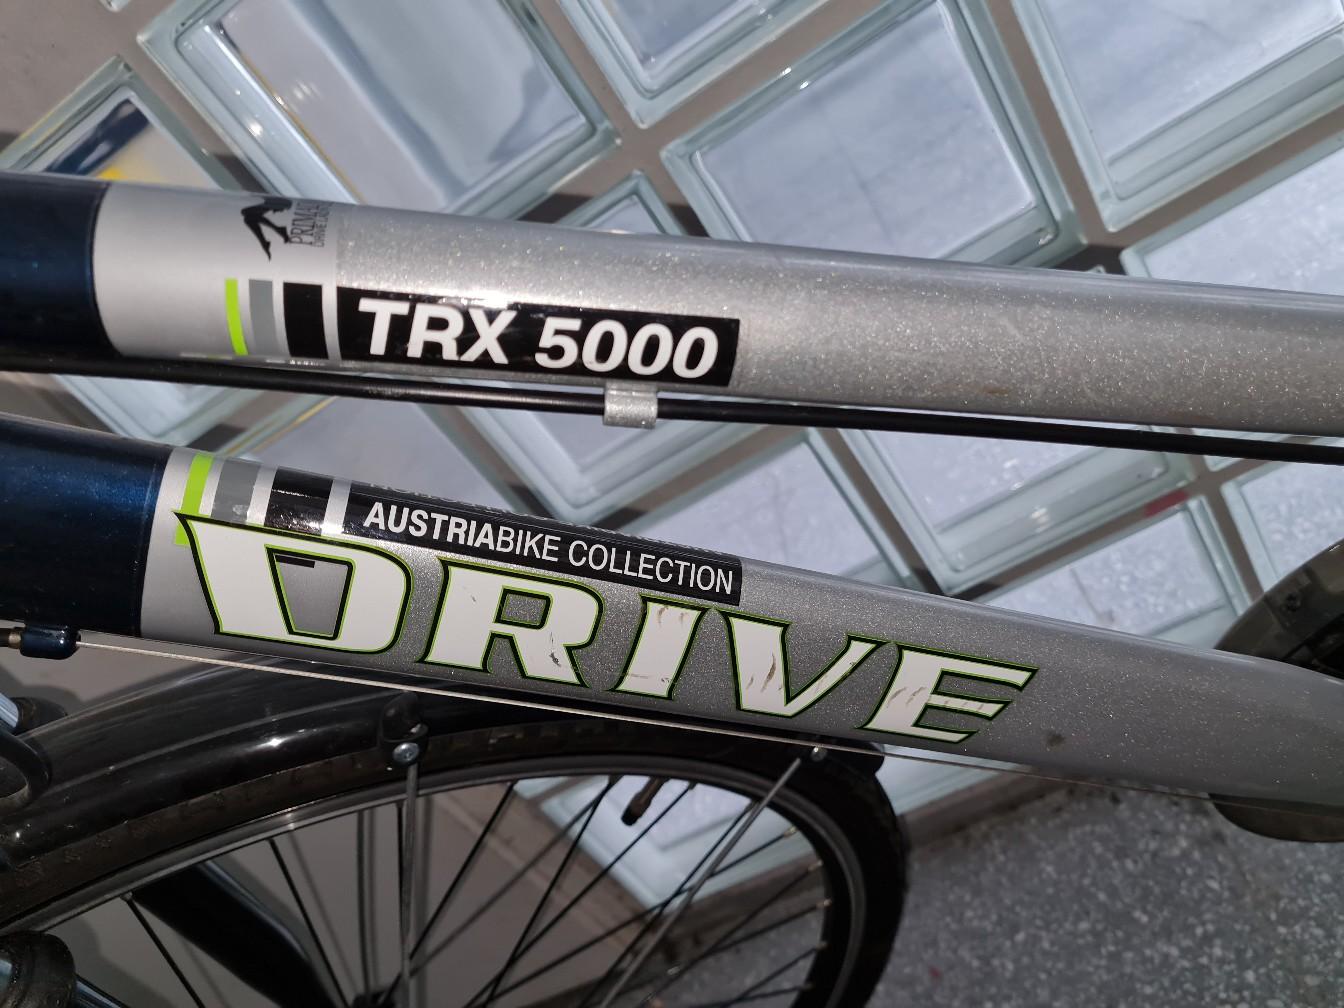 Fahrrad Drive Trx 5000 in 1210 Wien für € 120,00 zum